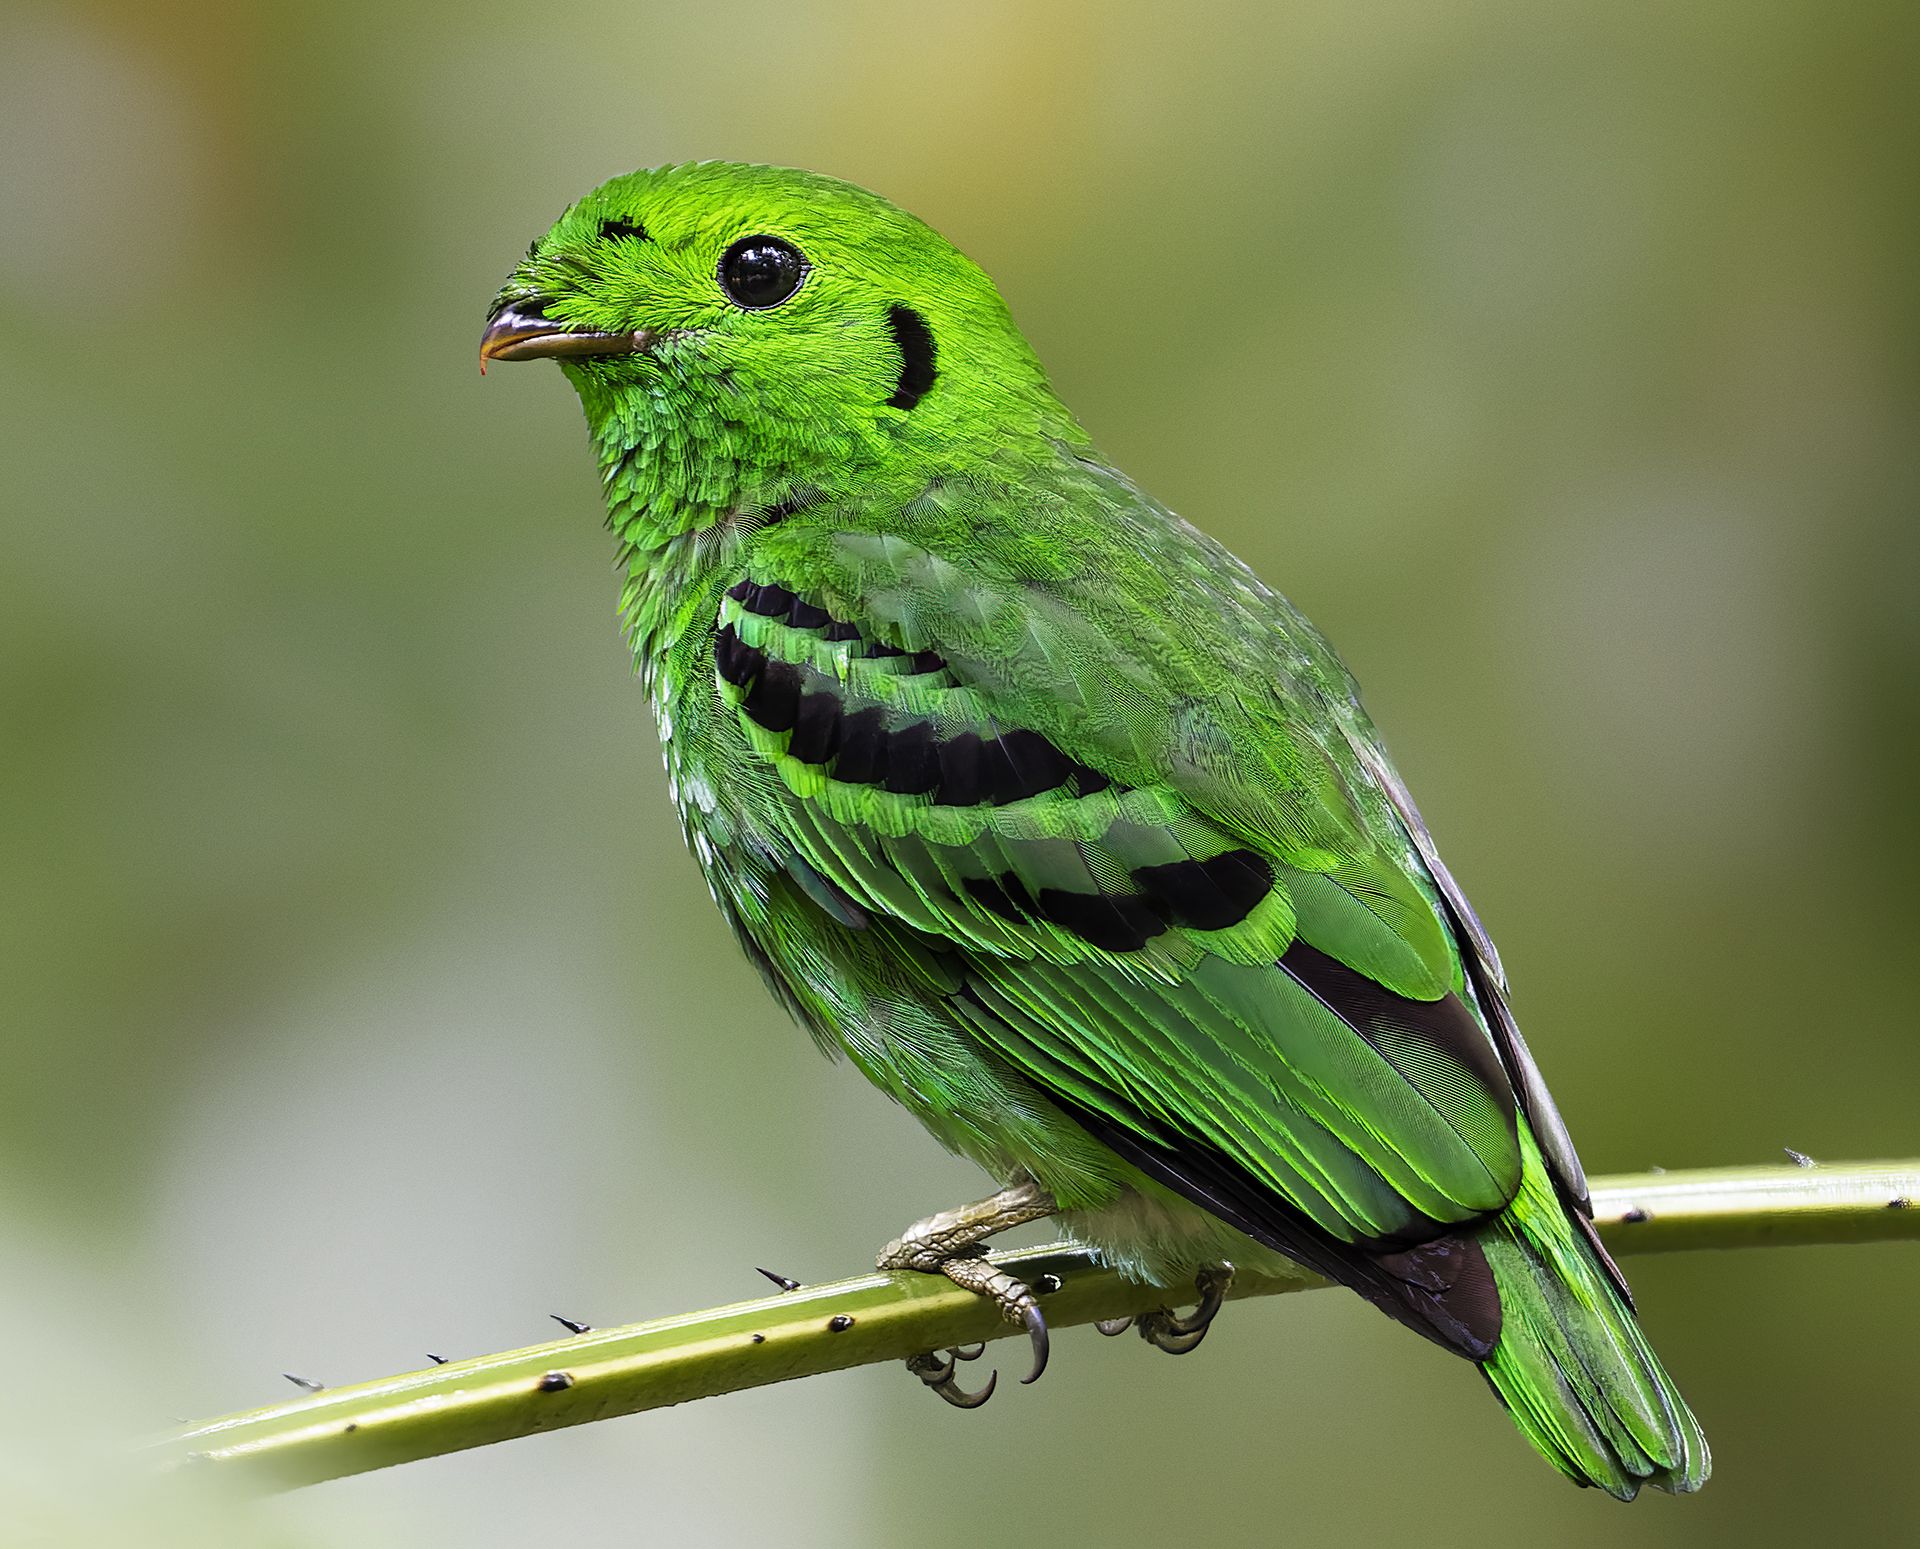 Wildlife, bird, Malkoha, Bird with prey, outdoor, nature, bird photography, colorful, PARTHA ROY